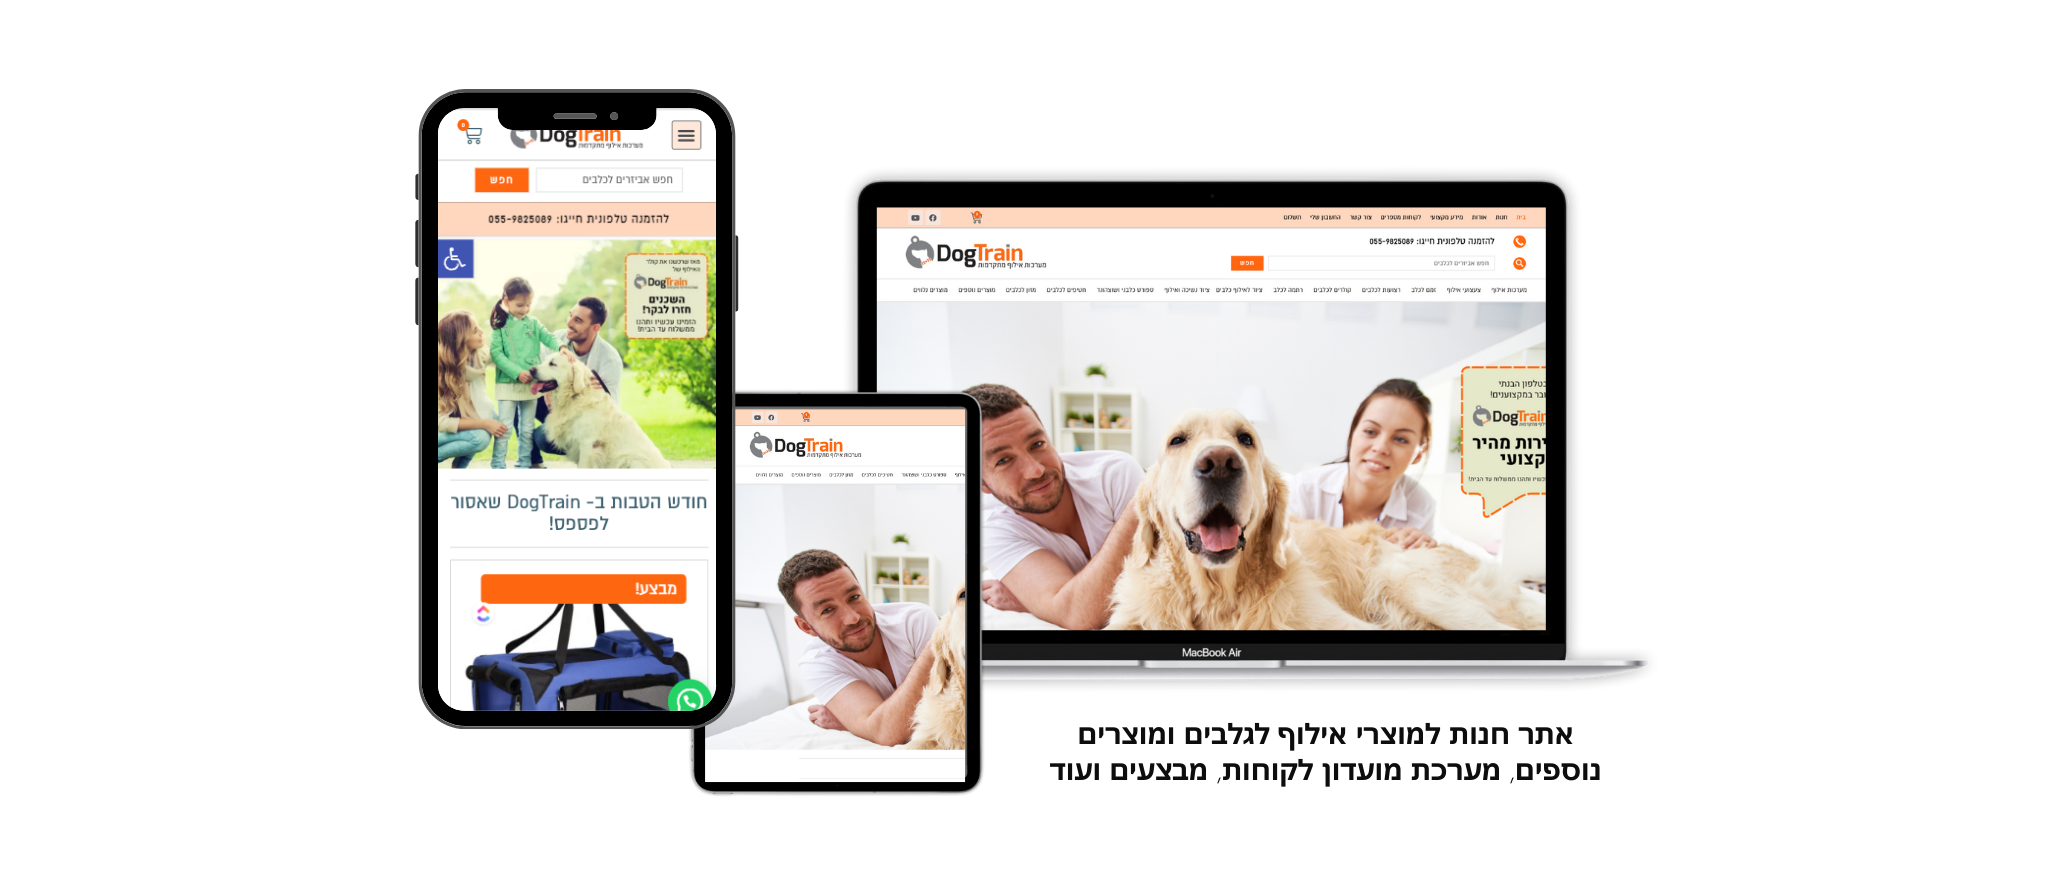 אתר חנות איקומרס לחברת דוגטריין מוצרי אילוף לכלבים חיבור לקופה בענן ולמערכת ניהול אתר, מערכת crm ומערכת מדידת שיחות